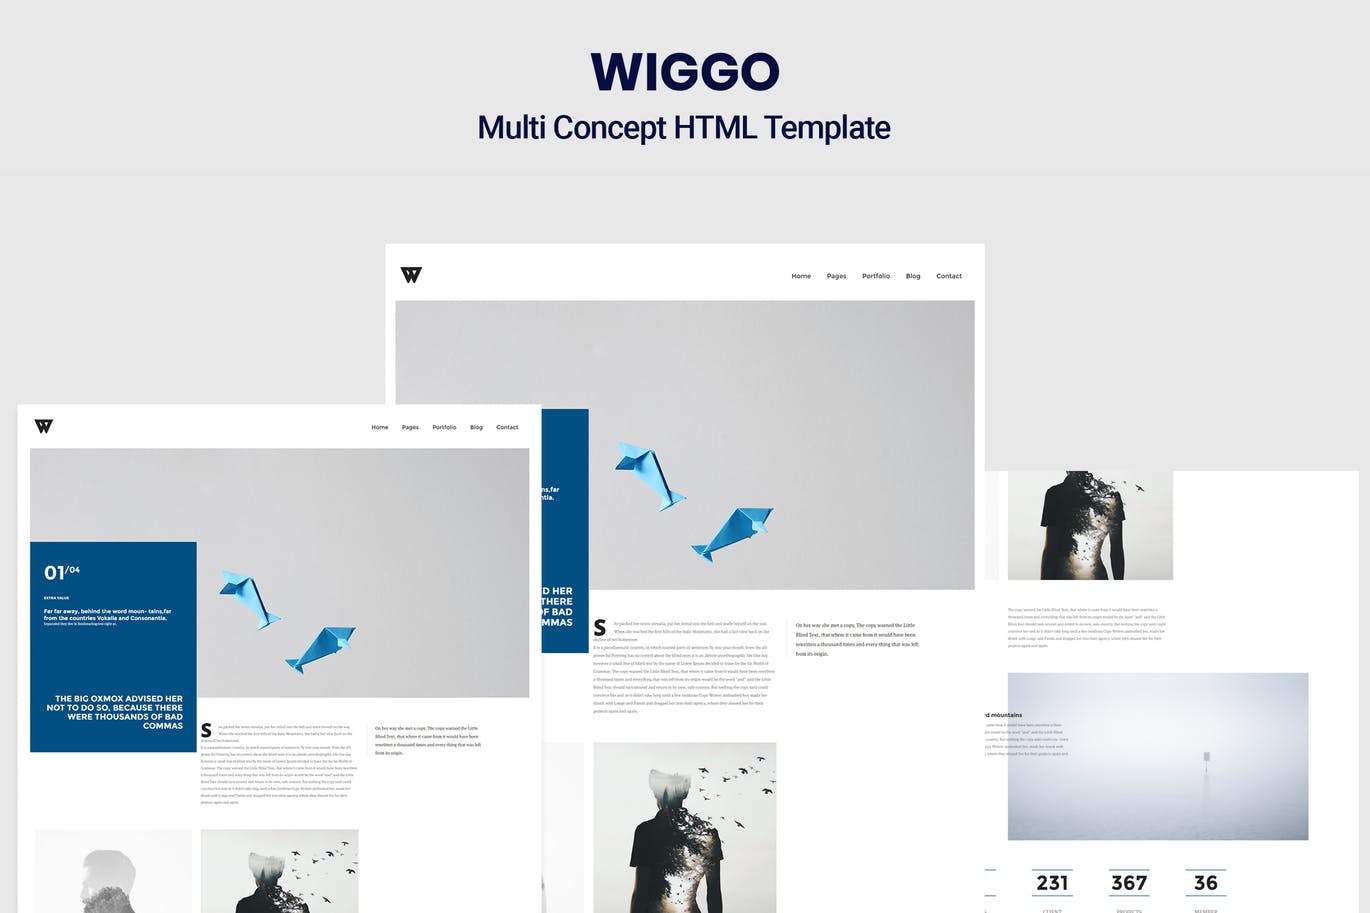 广告代理商/杂志/个人博客网站设计适用的HTML模板非凡图库精选 Wiggo – Multi Concept HTML Template插图